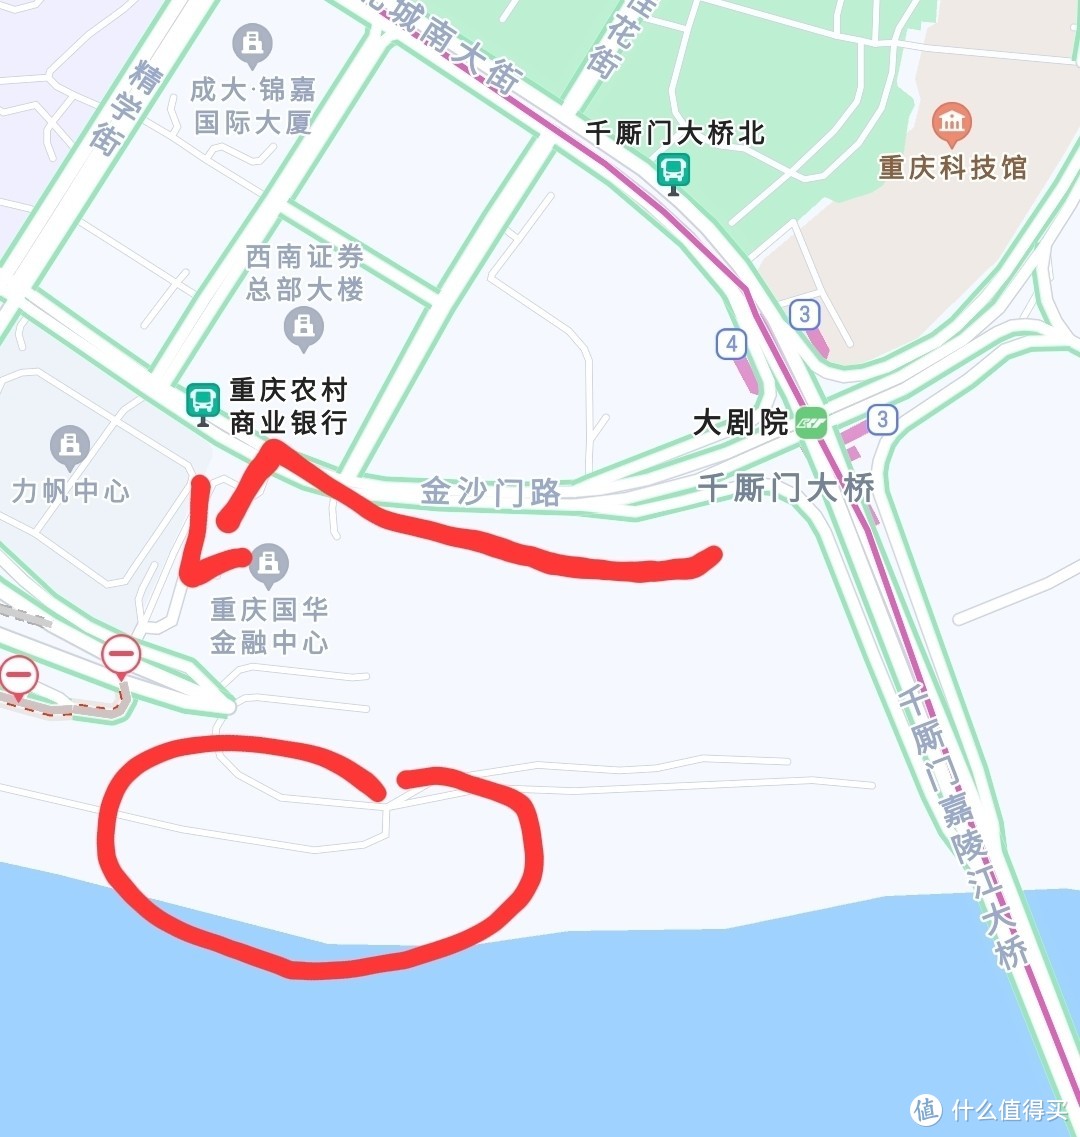 分享重庆主城核心区两个采石头的好地点